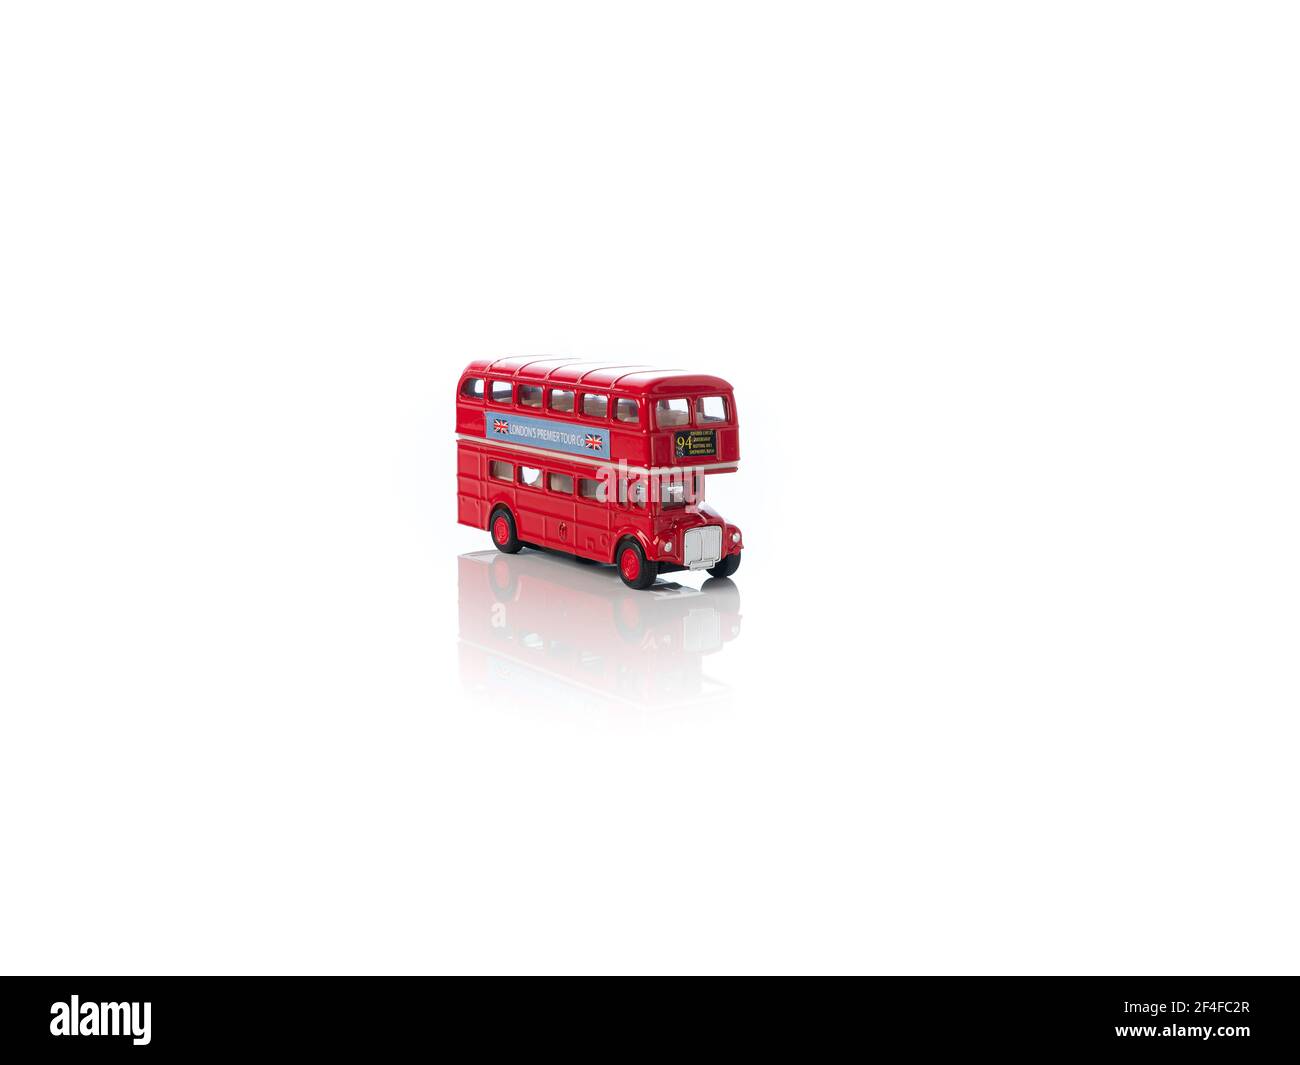 Londra, Inghilterra marzo 2021. Vecchio autobus turistico rosso di Londra - giocattolo su sfondo bianco, immagine speculare, simbolo di Londra, Regno Unito Foto Stock